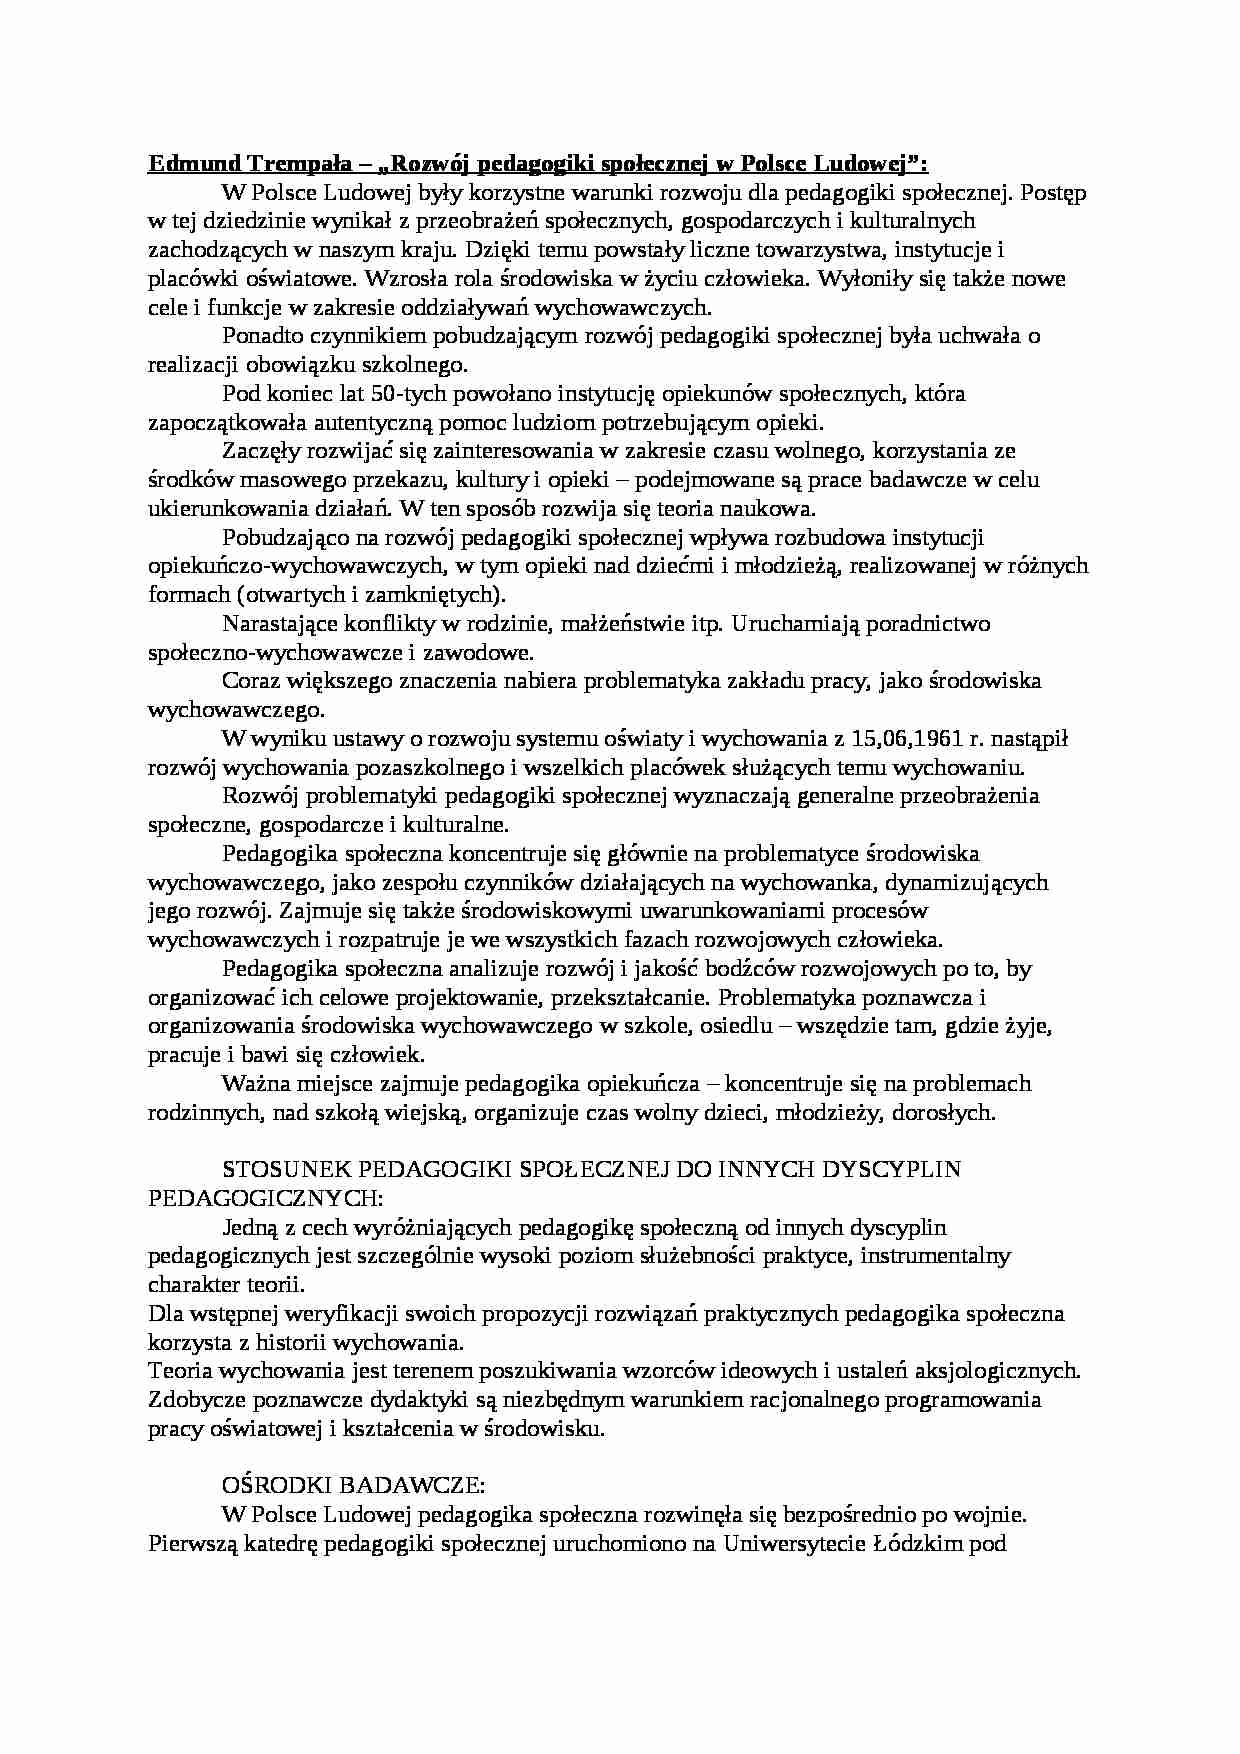 Rozwój pedagogiki społecznej w Polsce Ludowej-opracowanie - strona 1